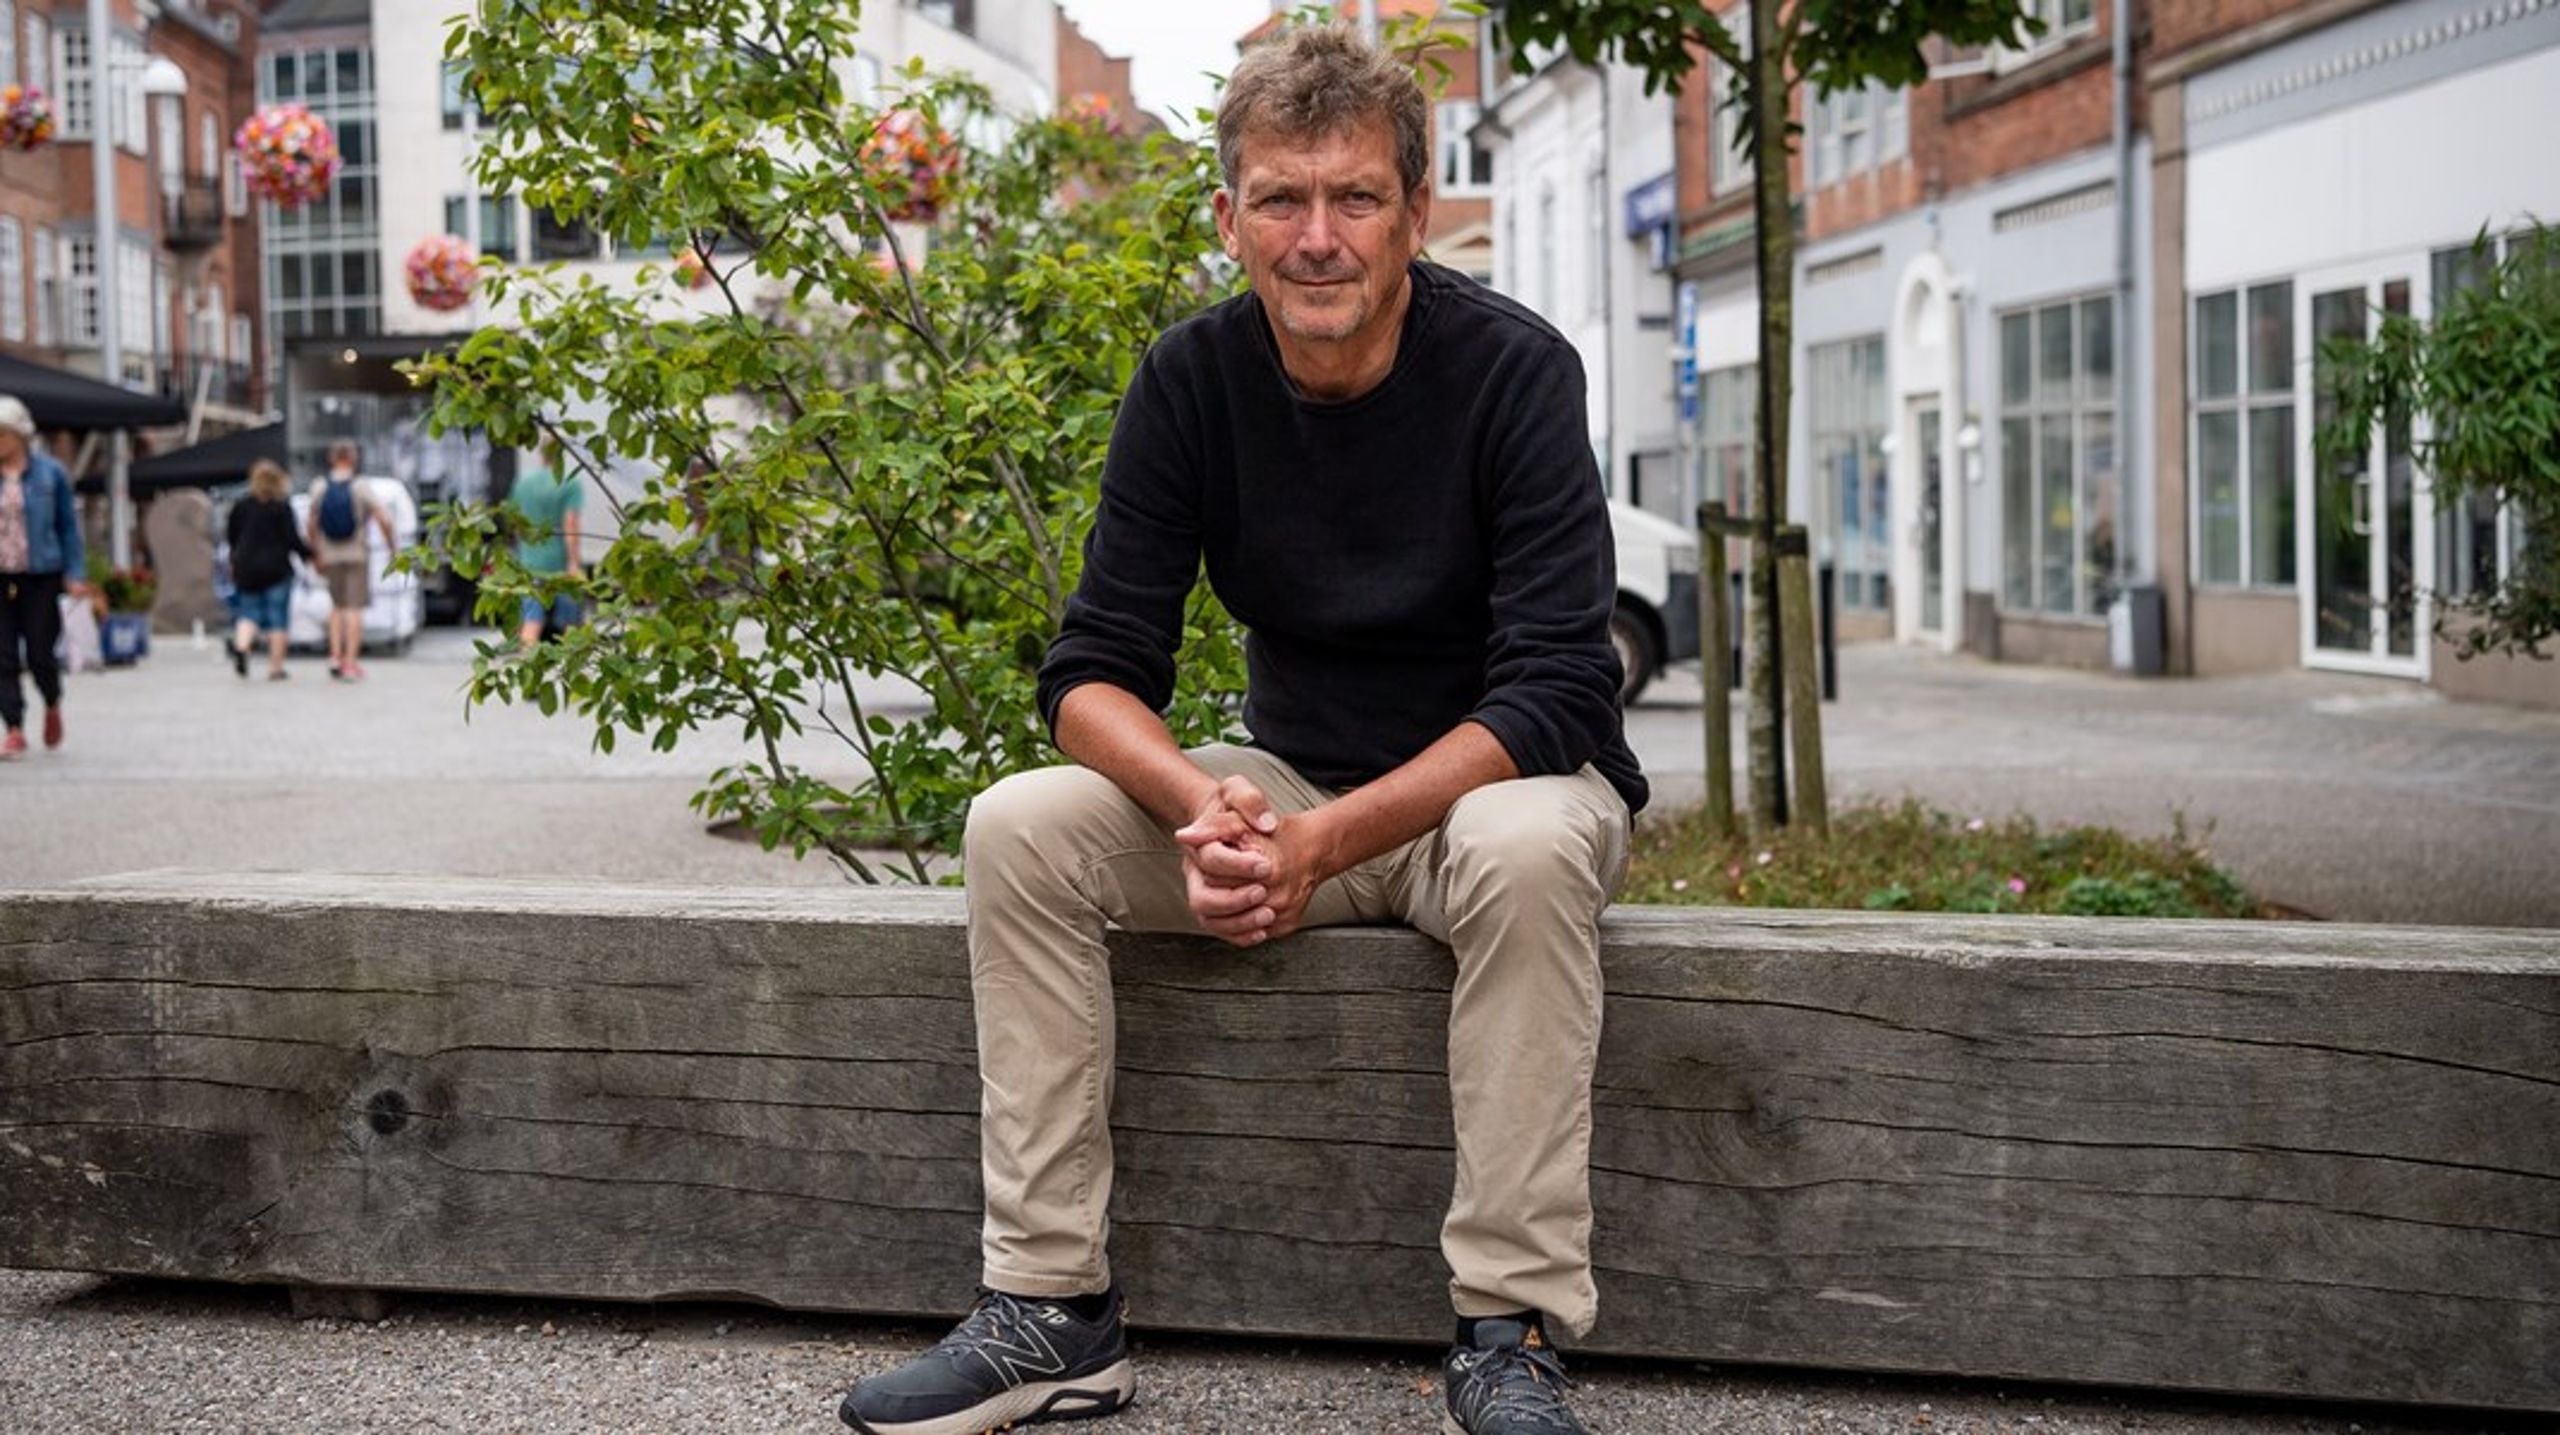 Lars Norup stopper som chefredaktør på Viborg Stifts Folkeblad ved udgangen af februar næste år. Han startede på redaktionen i 1985.